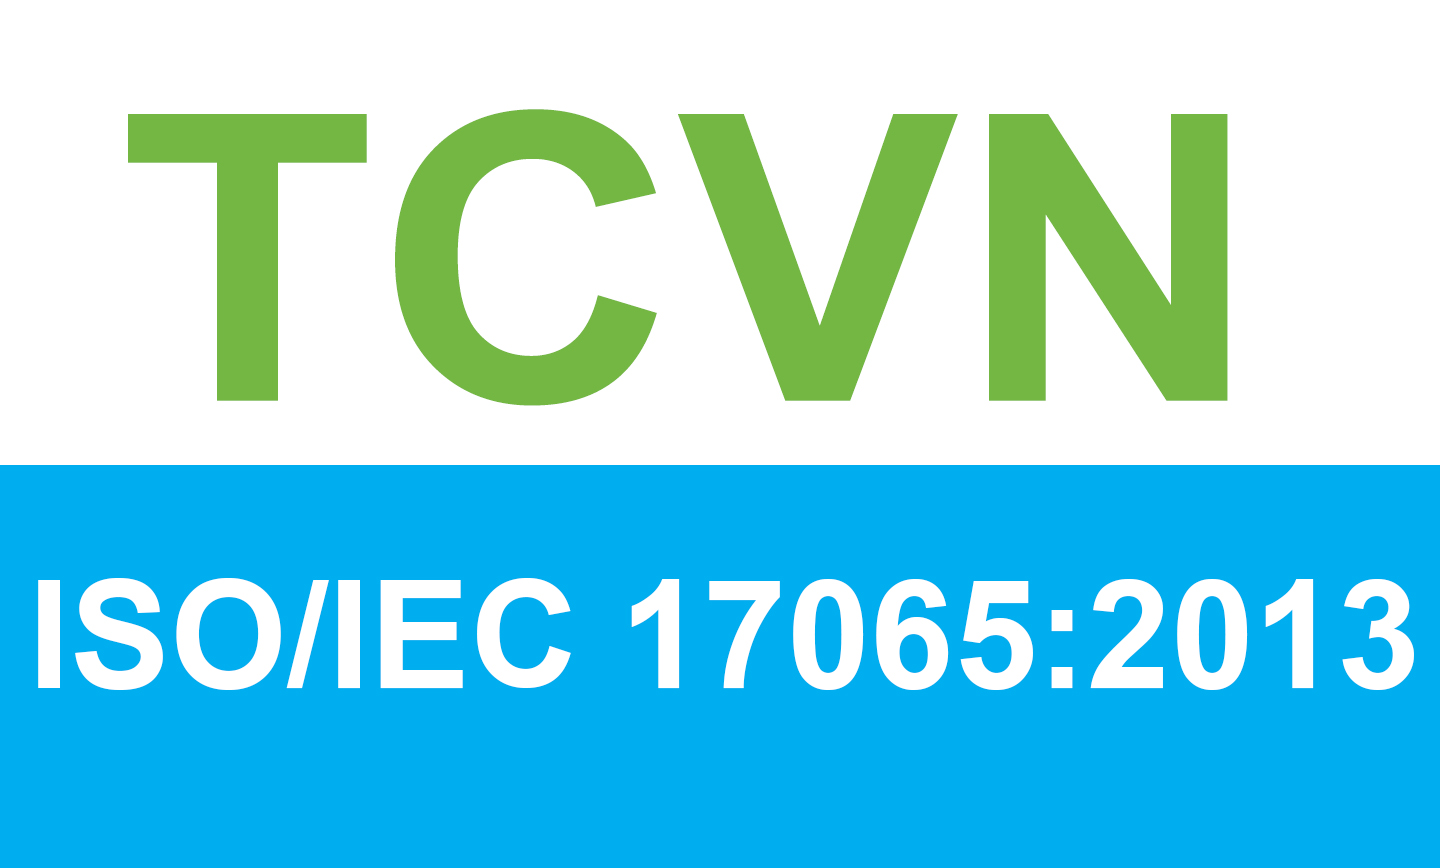 TCVN ISO 17065:2013